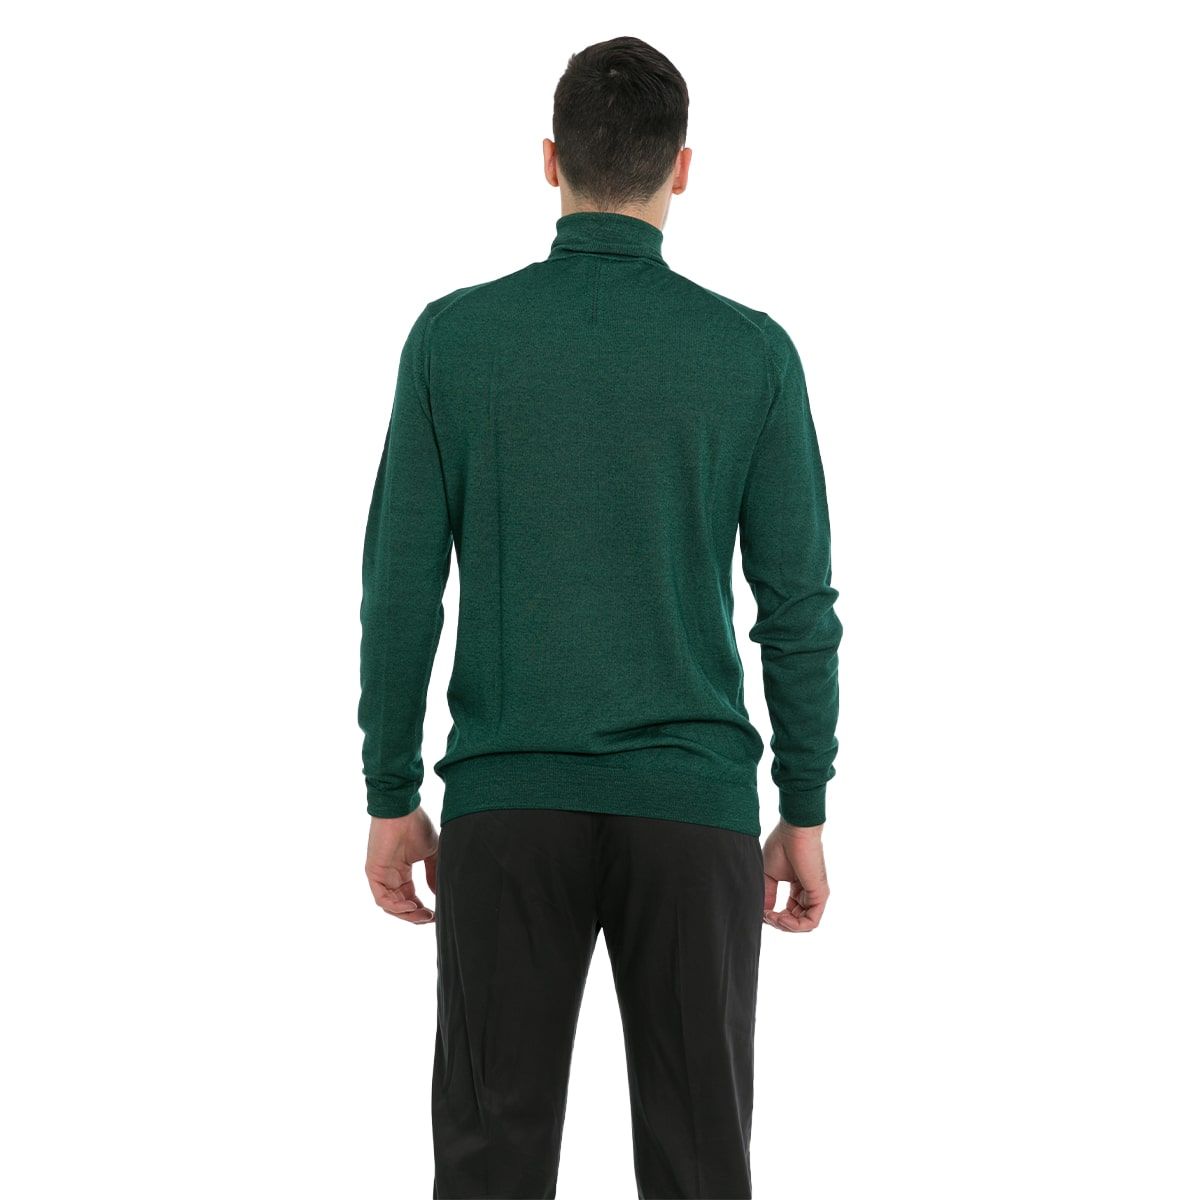 Green High Neck Sweater